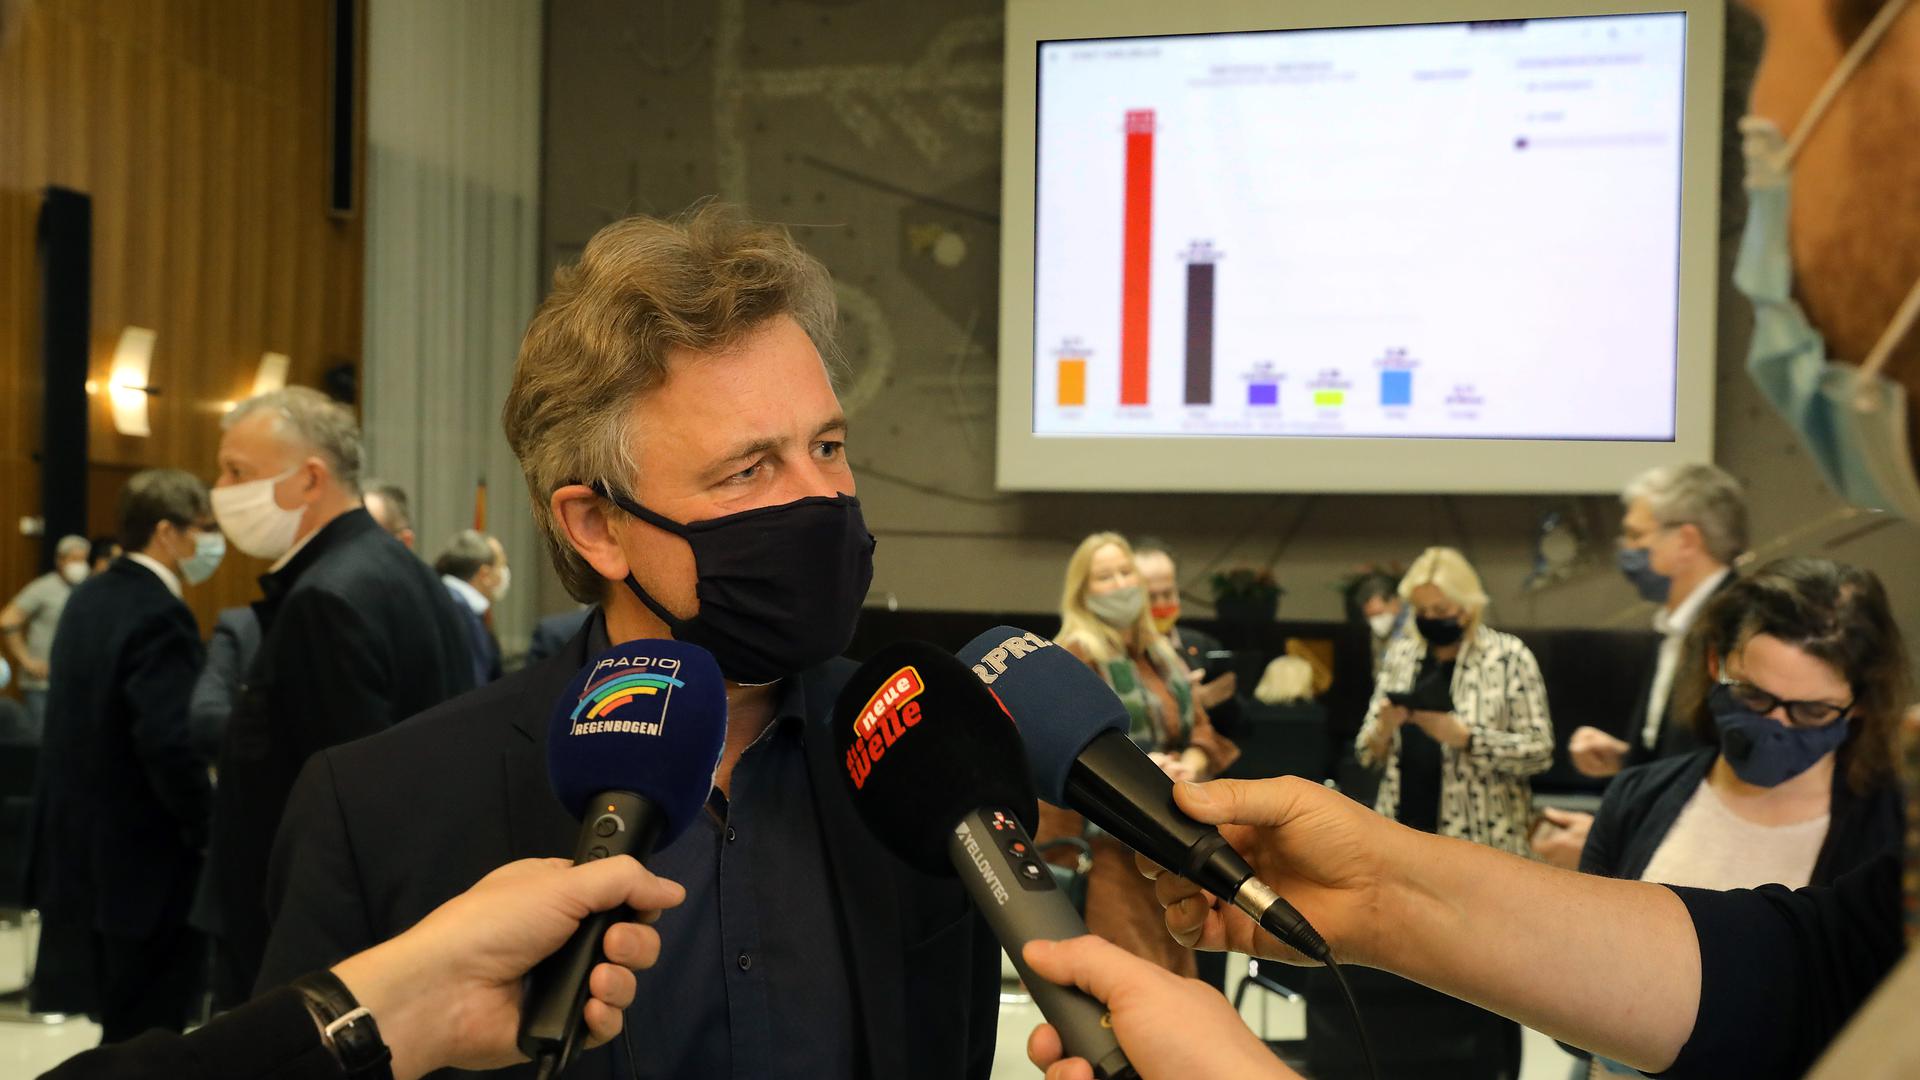 Frank Mentrup gibt nach der Auszählung der Stimmen der OB-Wahl in Karlsruhe im Rathaus Interviews.